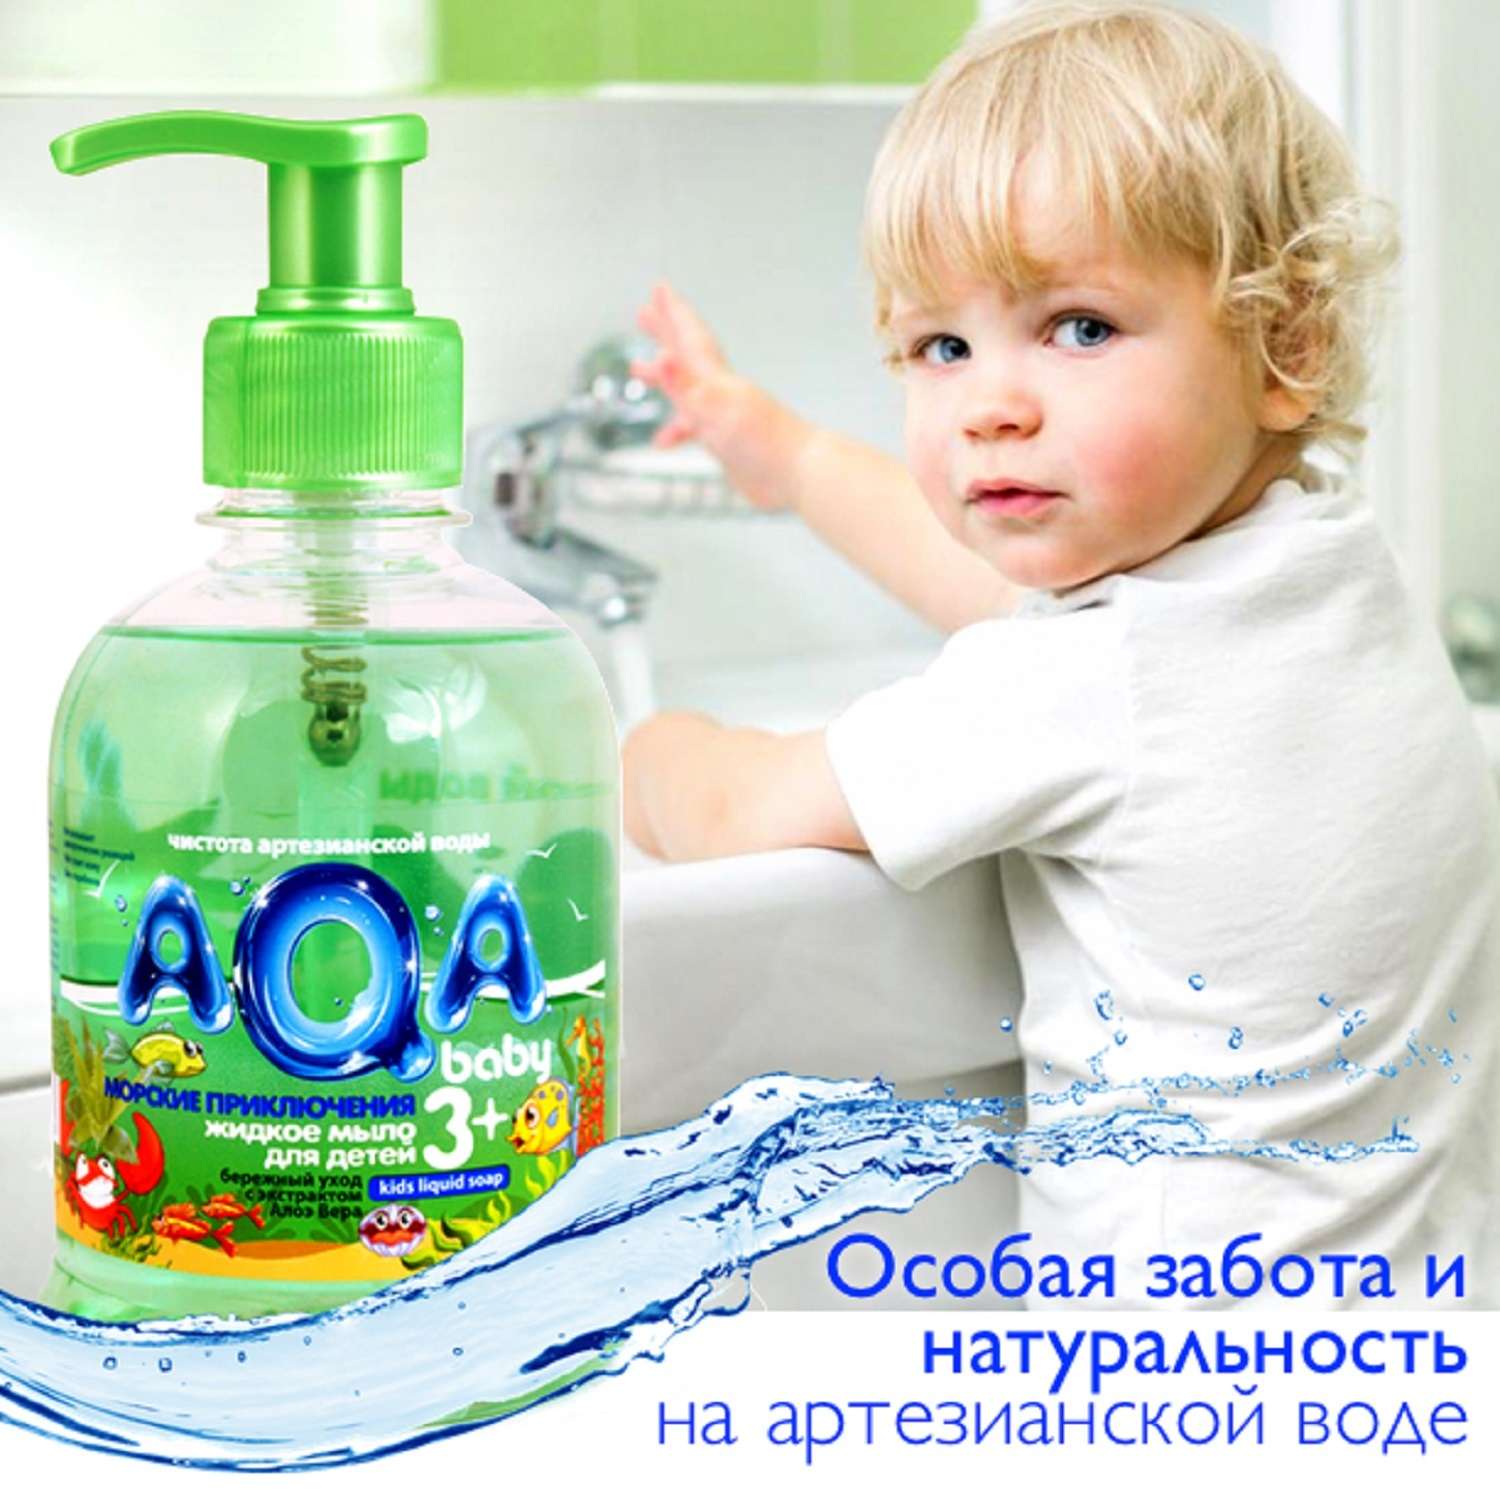 Жидкое мыло AQA baby для детей Морские приключения 300 мл - фото 2